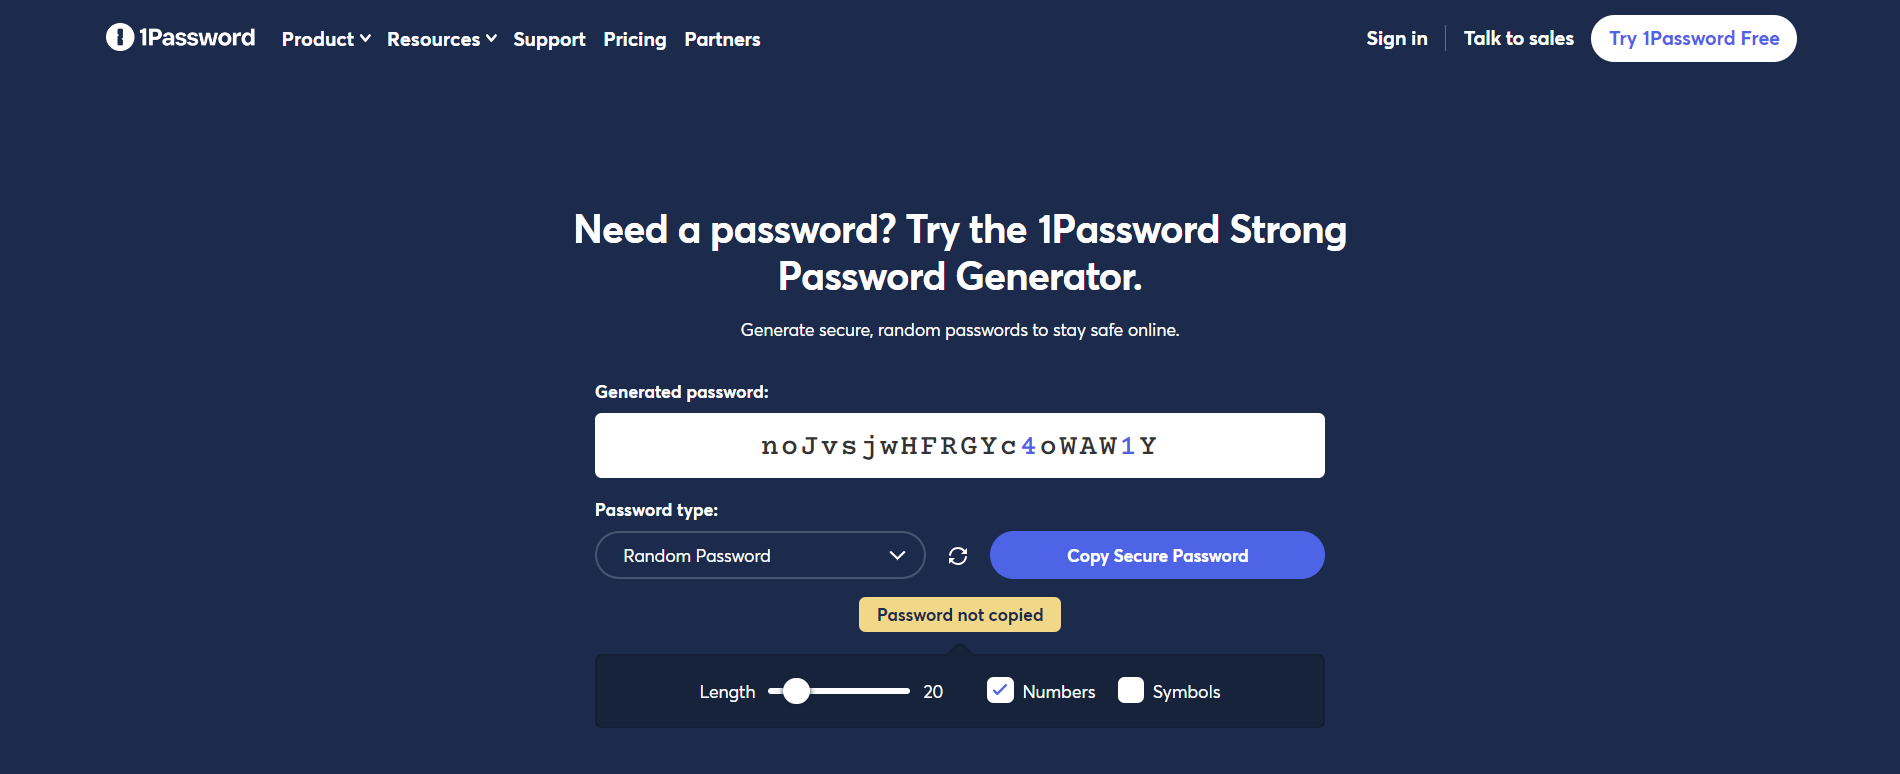 1Password password generator